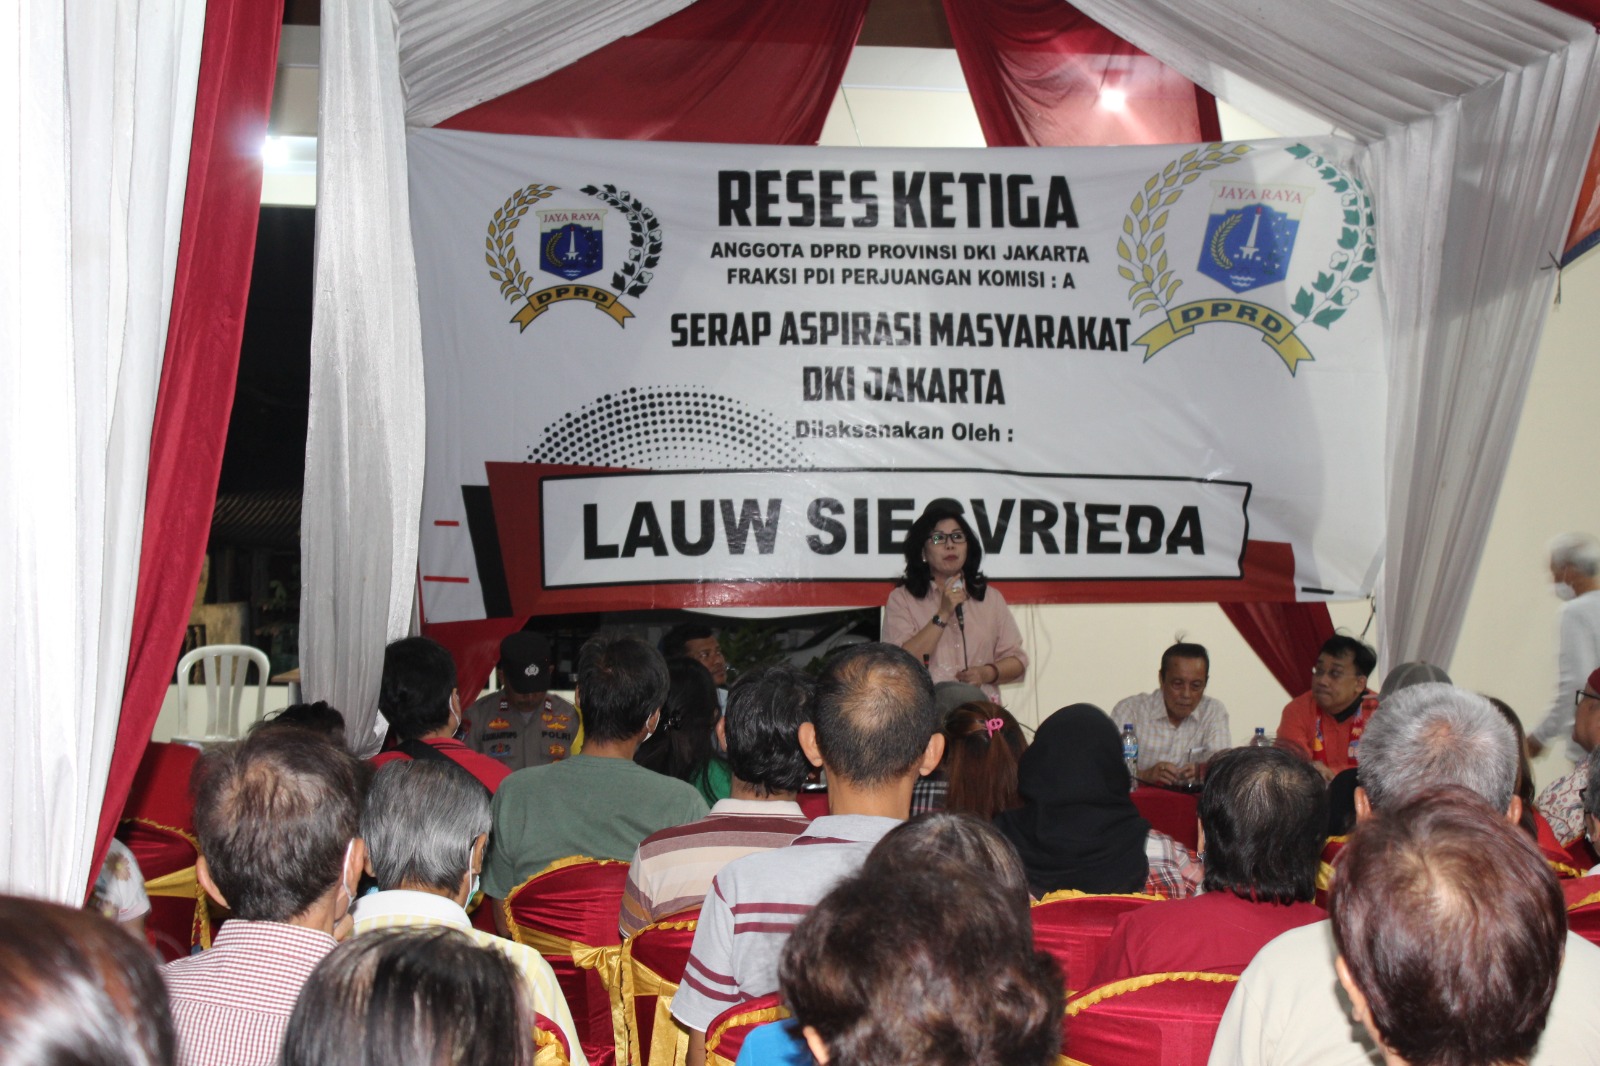 Anggota DPRD DKI Jakarta, Lauw Siegvrieda menampung aspirasi warga minta rumah singgah lansia. (Foto: Bambang/ifakta.co)